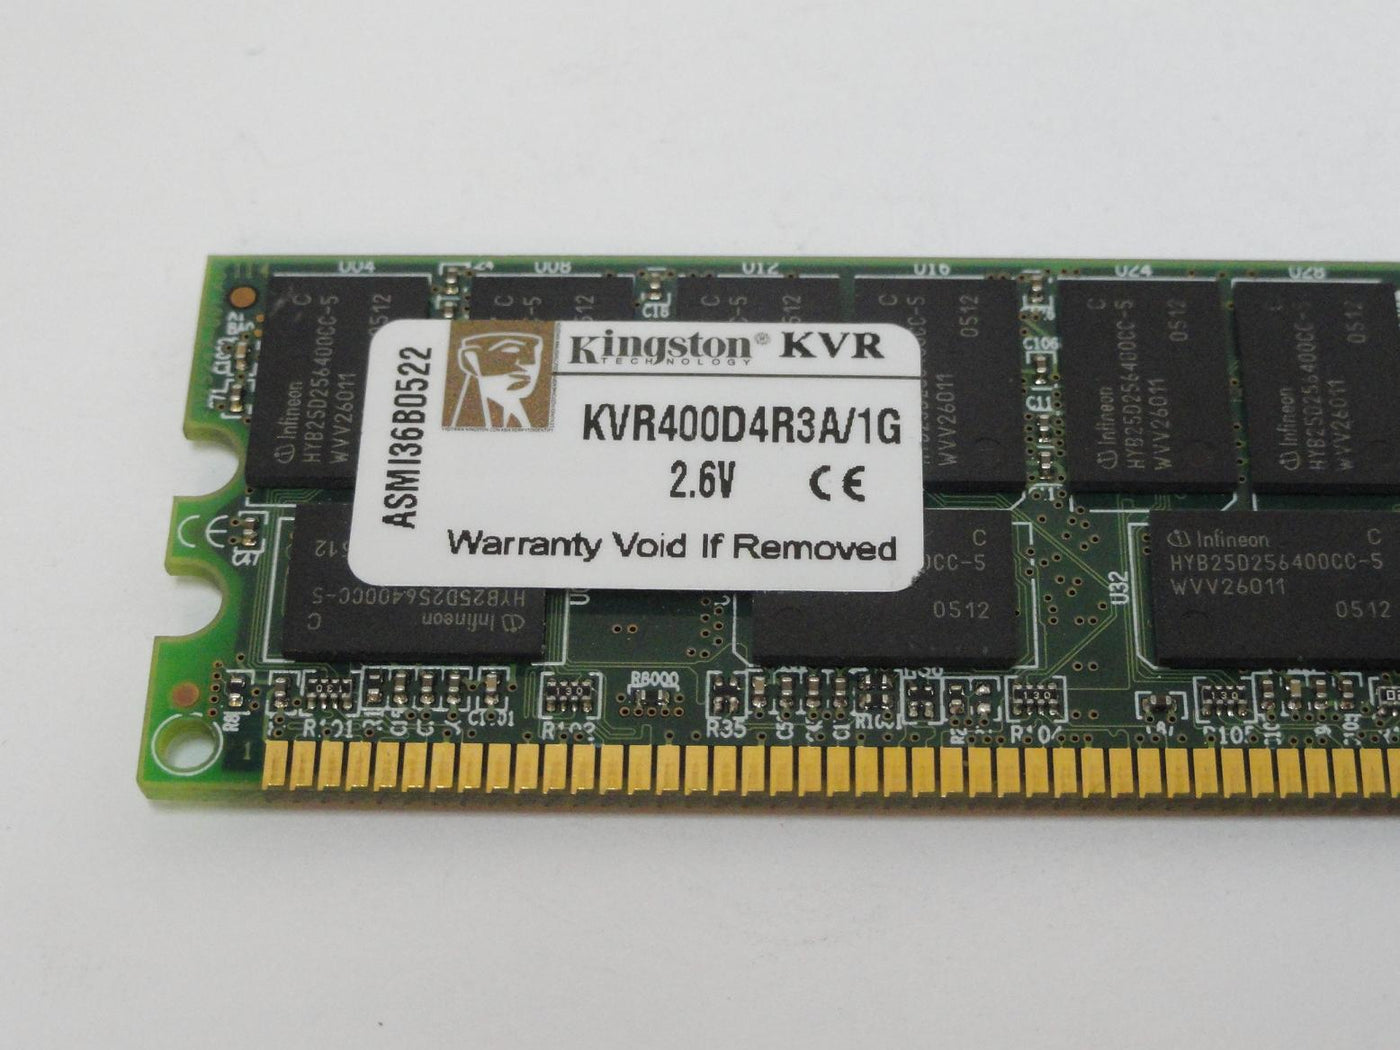 Kingston 1GB PC3200 DDR-400MHz DIMM RAM ( 9965247-006.A02 KVR400D4R3A/1G ) REF